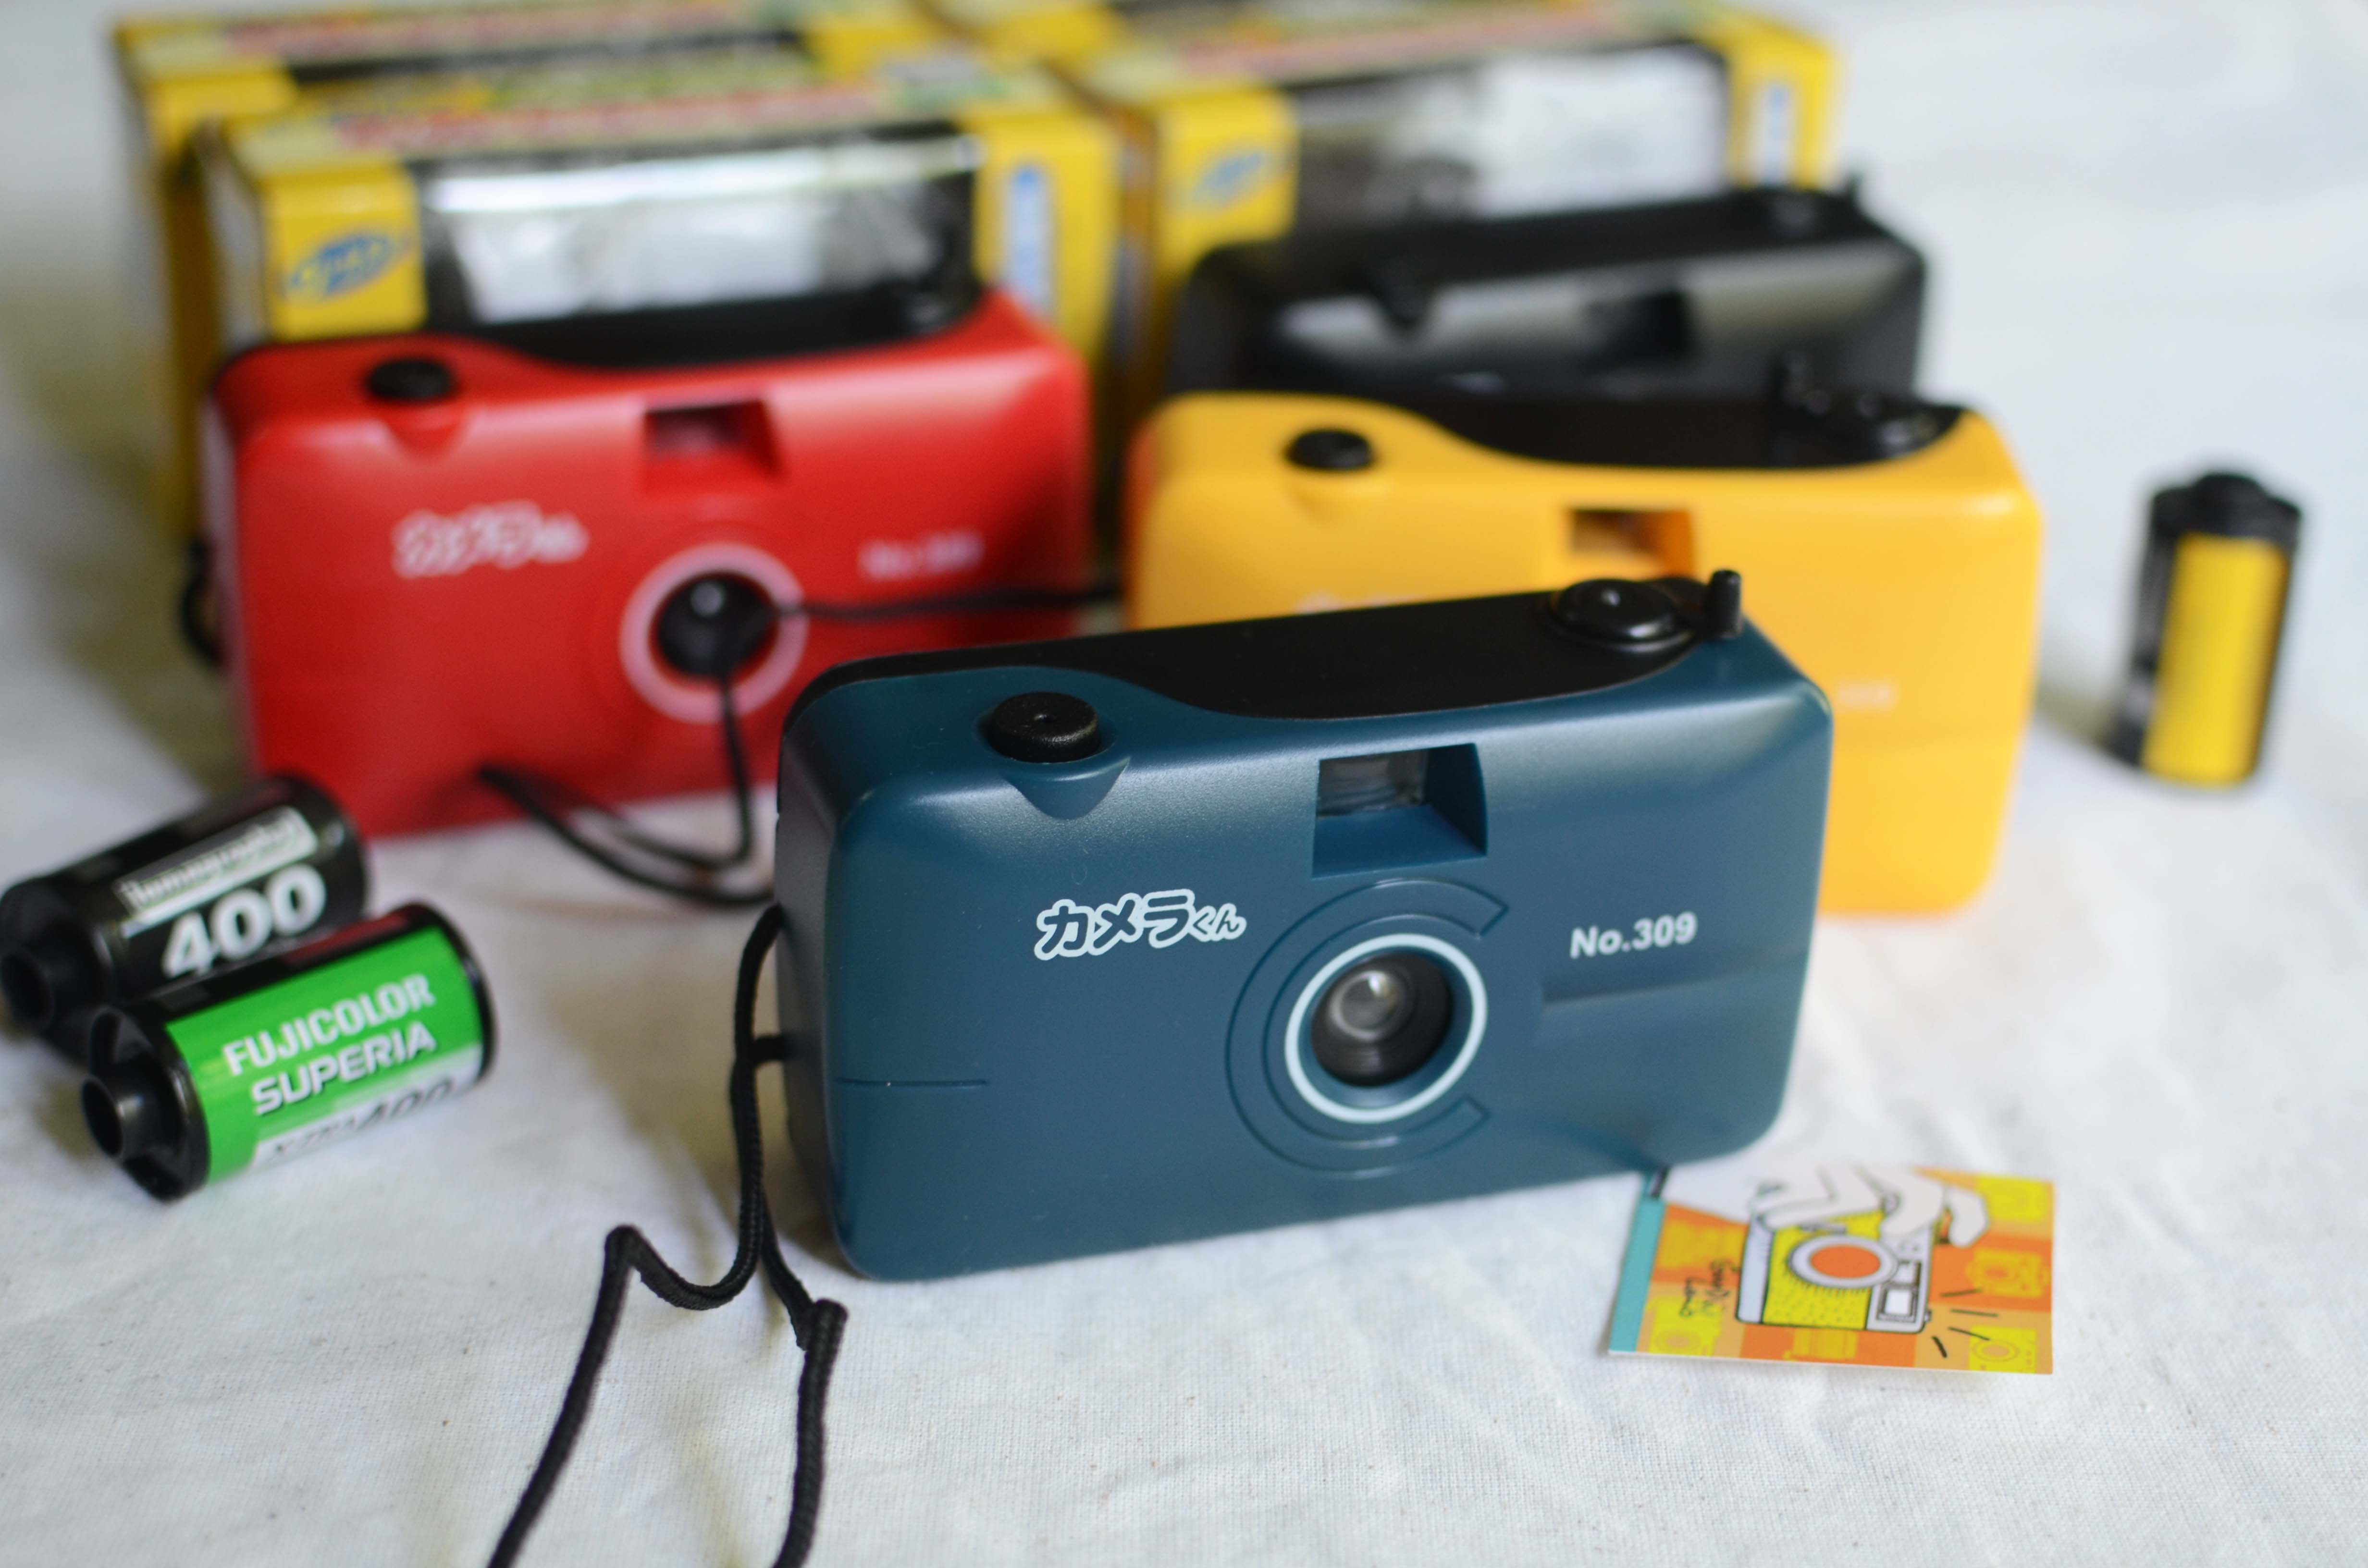 กล้องฟิล์ม กล้องทอย Japan (งานกล่อง) มี 4 สี